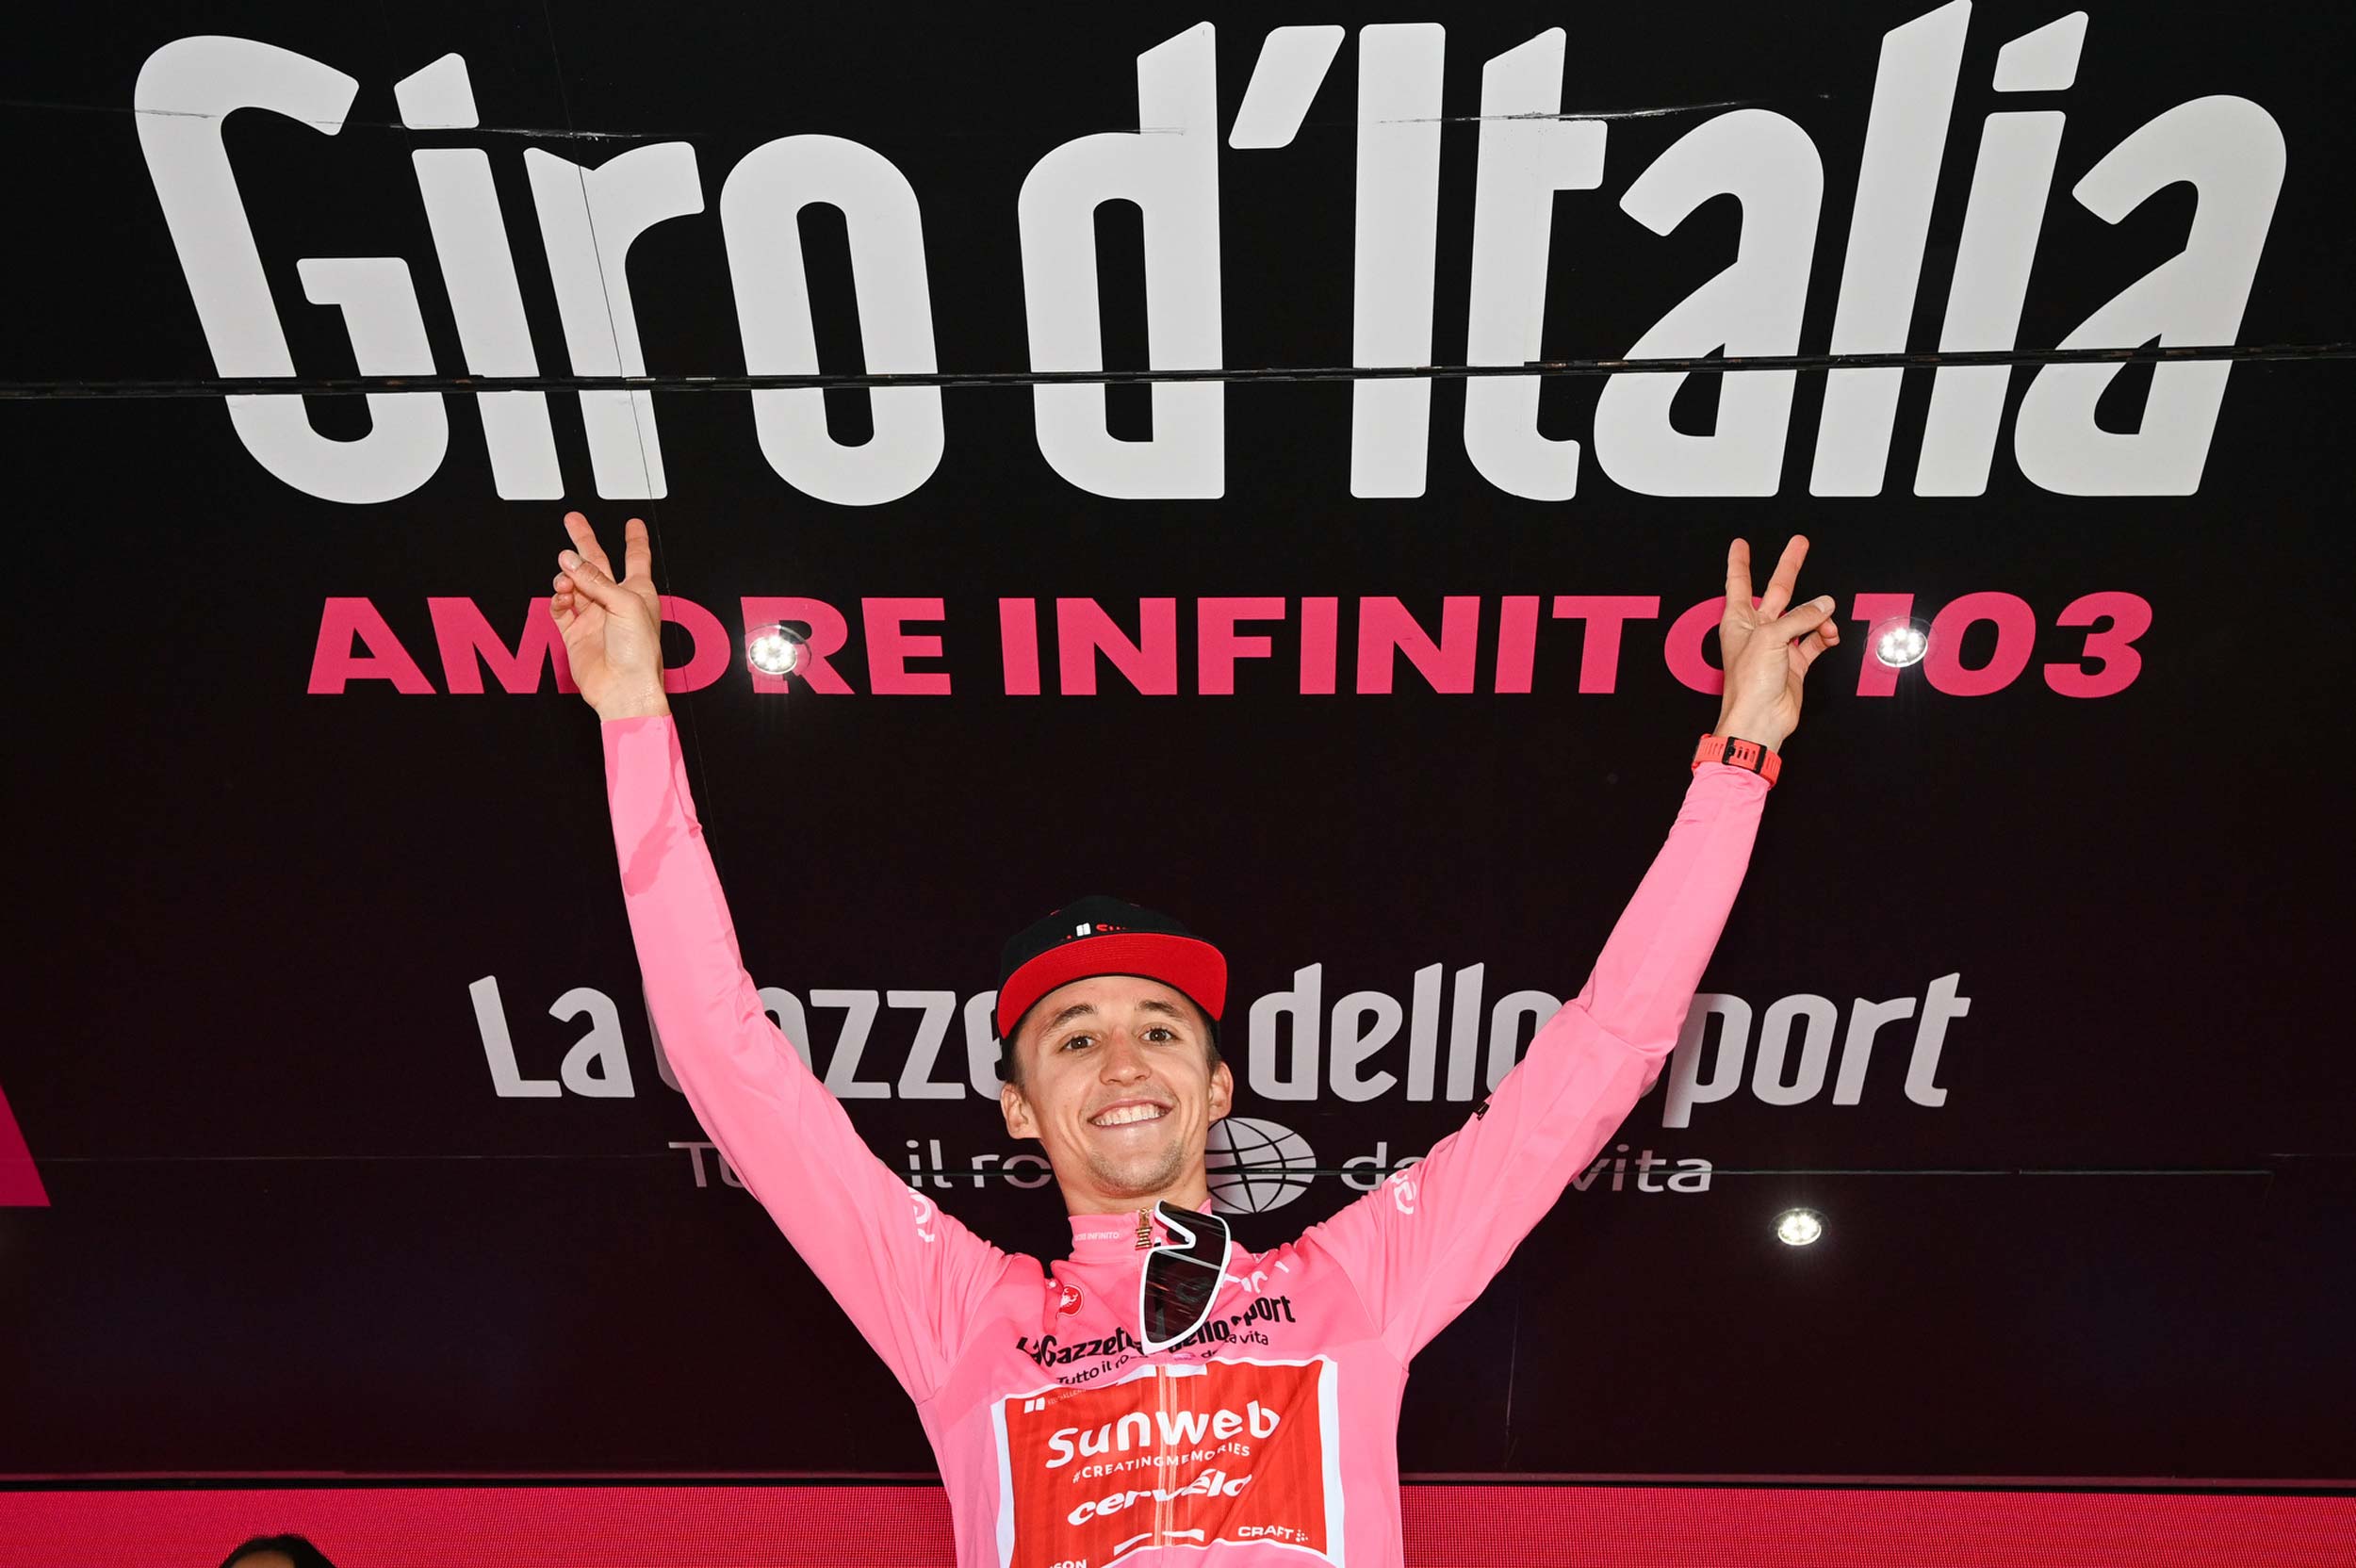 Giro dItalia returns to free-to-air TV broadcast in Australia, via SBS